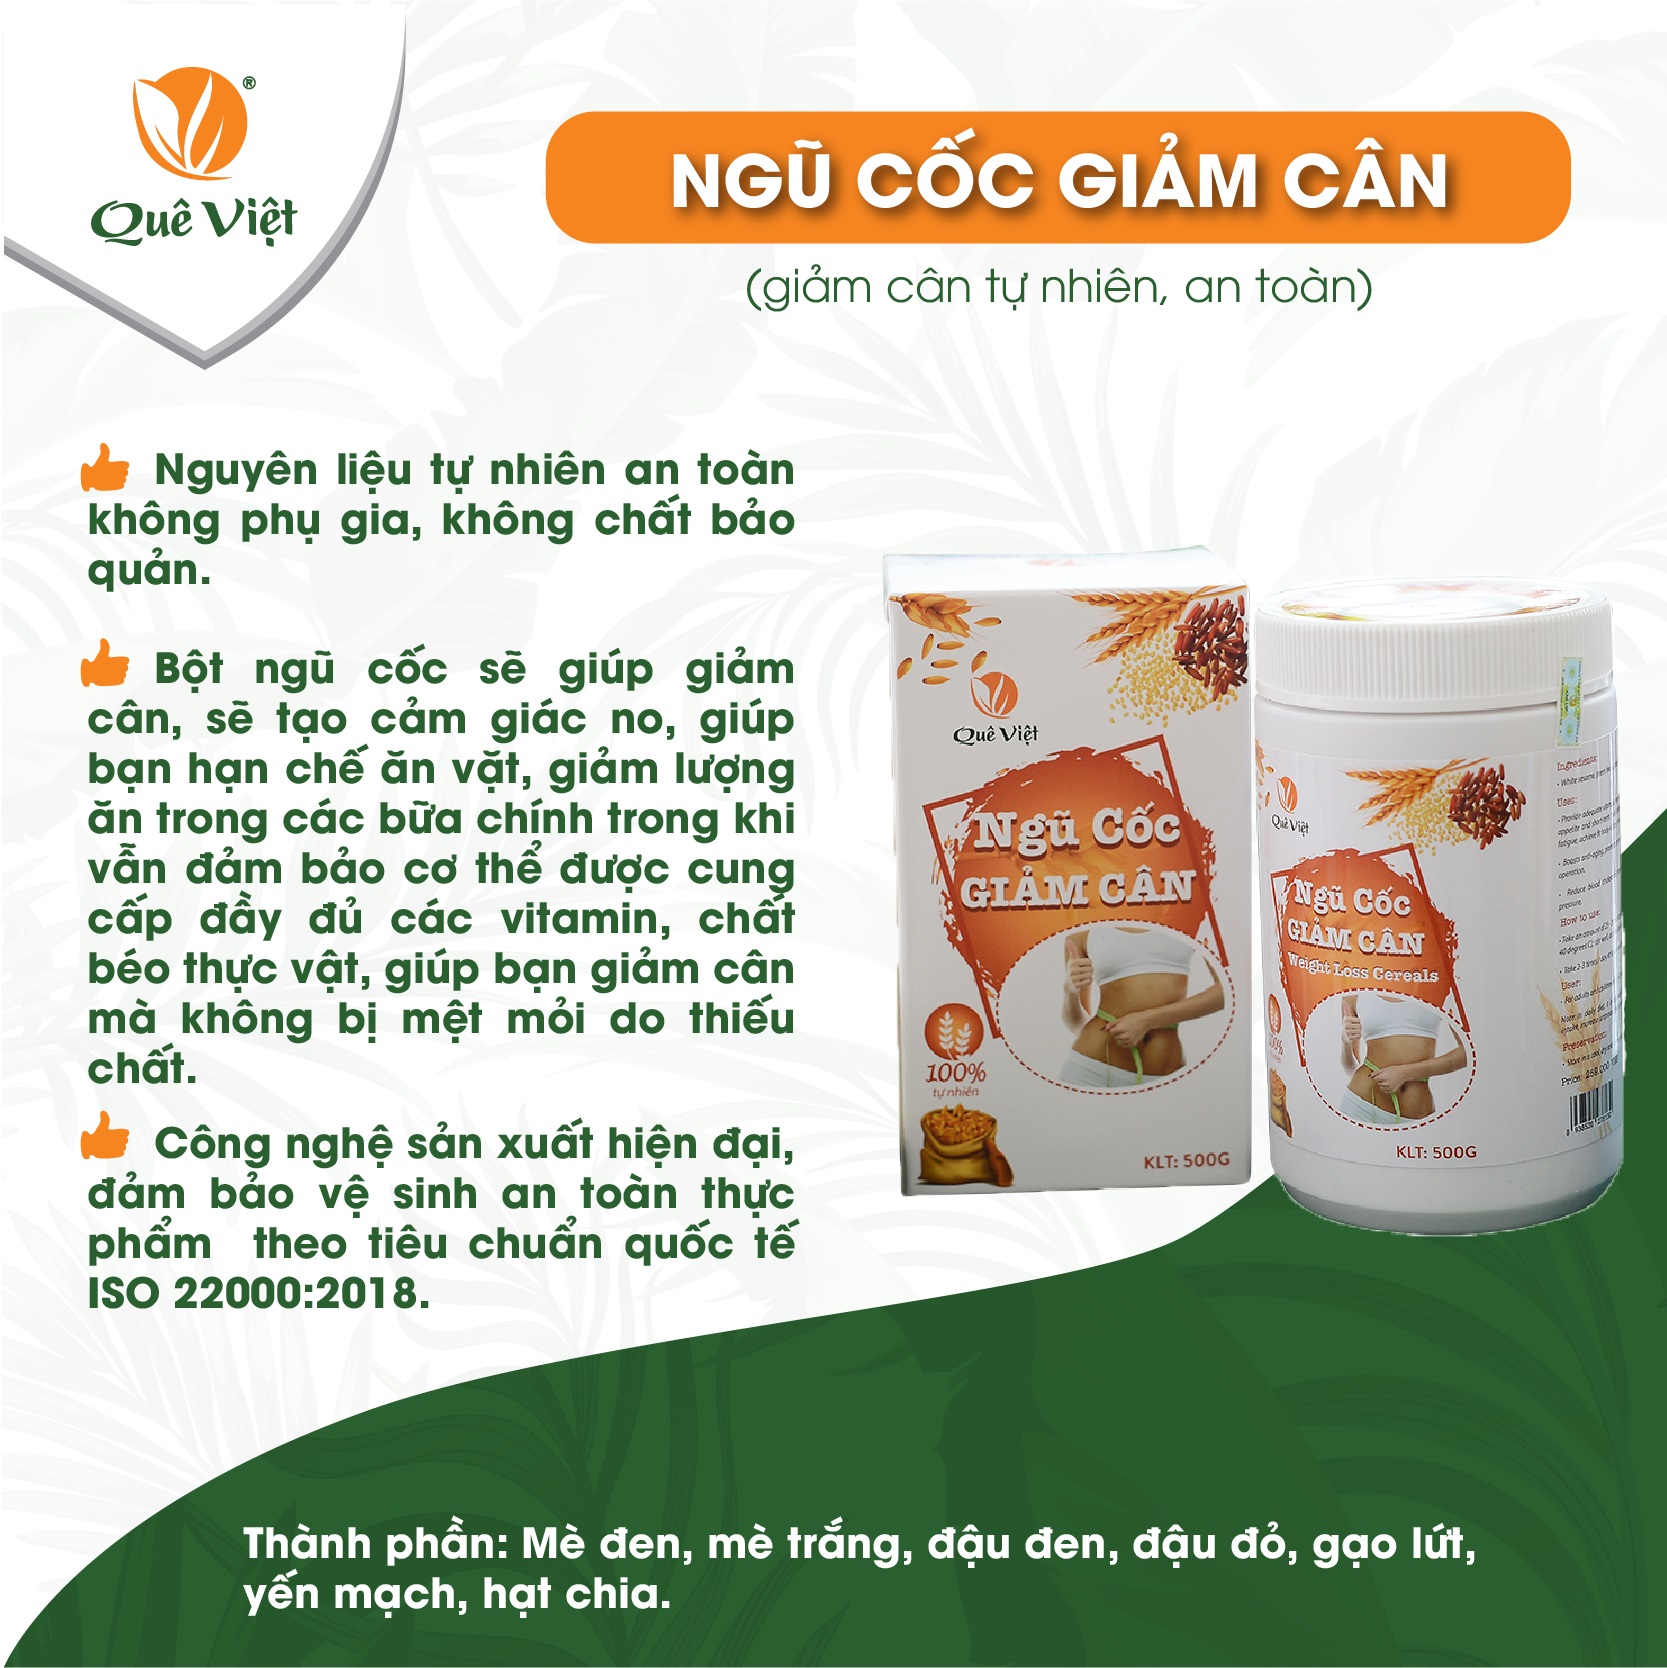 Combo Trà gạo lứt và Ngũ cốc giảm cân ăn kiêng Quê Việt nguyên liệu tự nhiên an toàn 